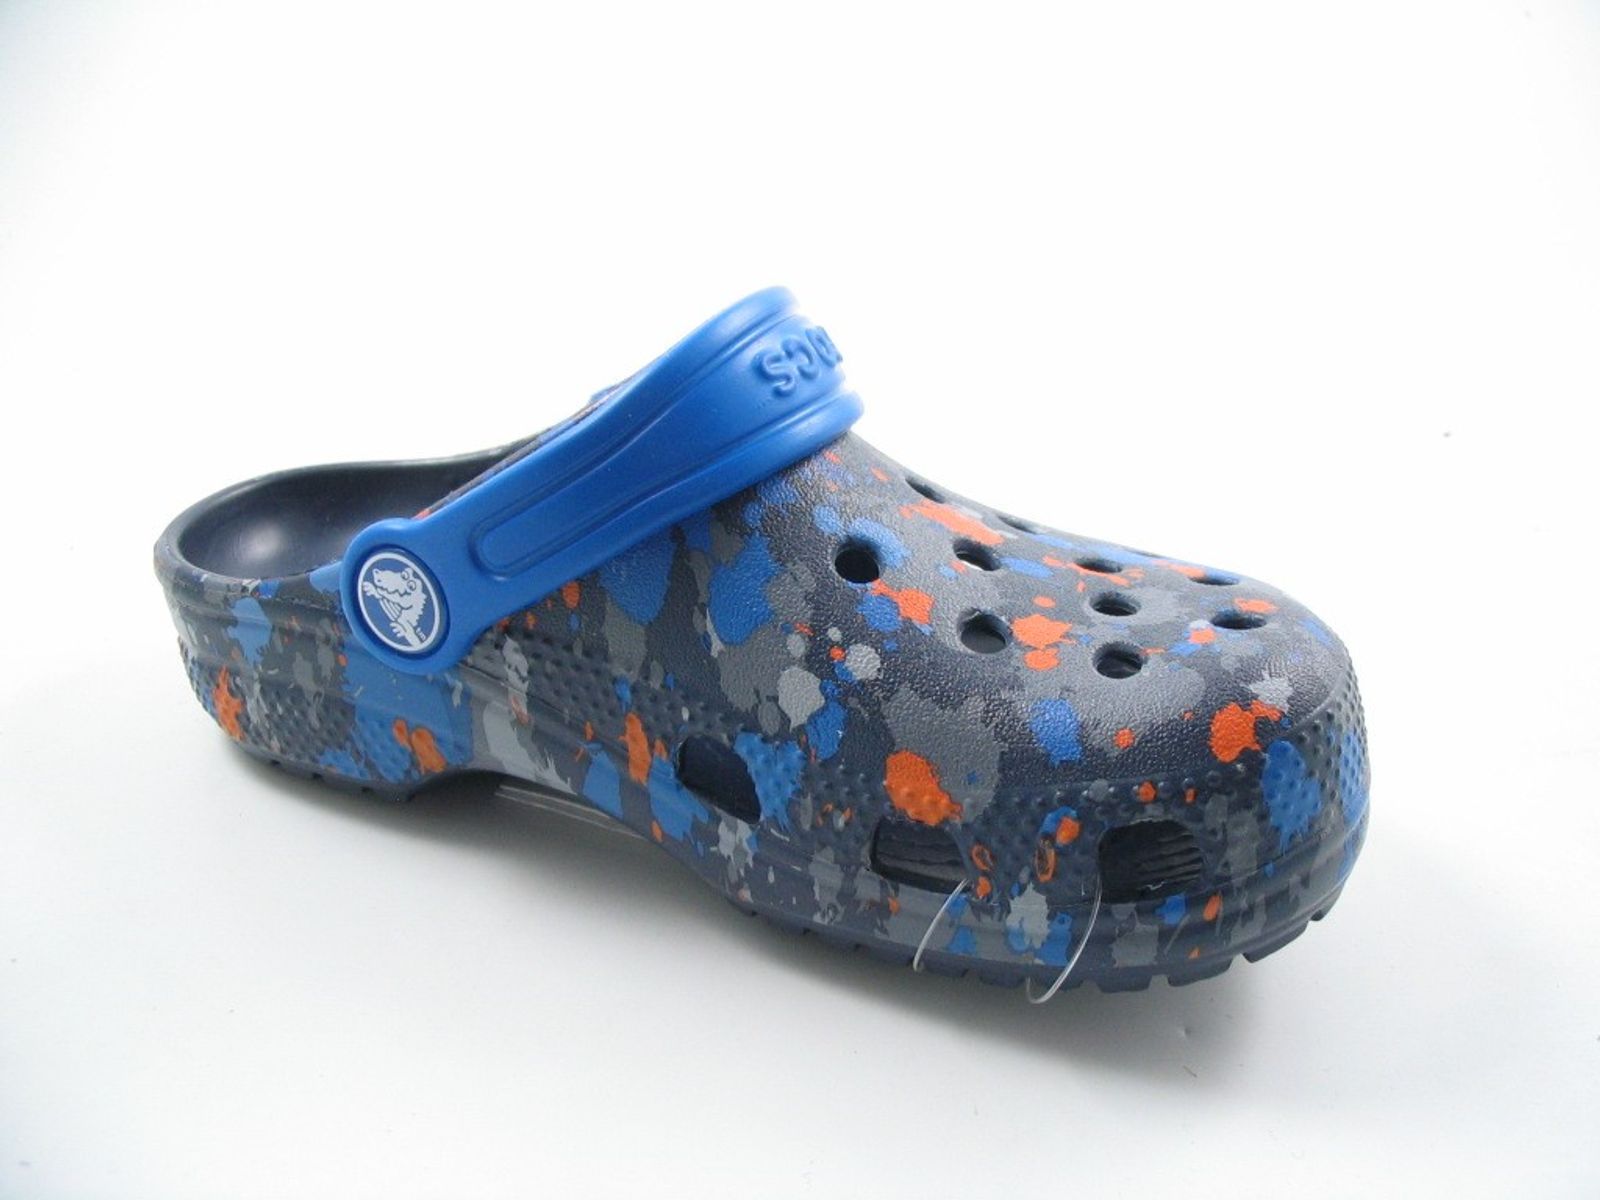 Schuh von Crocs, 29